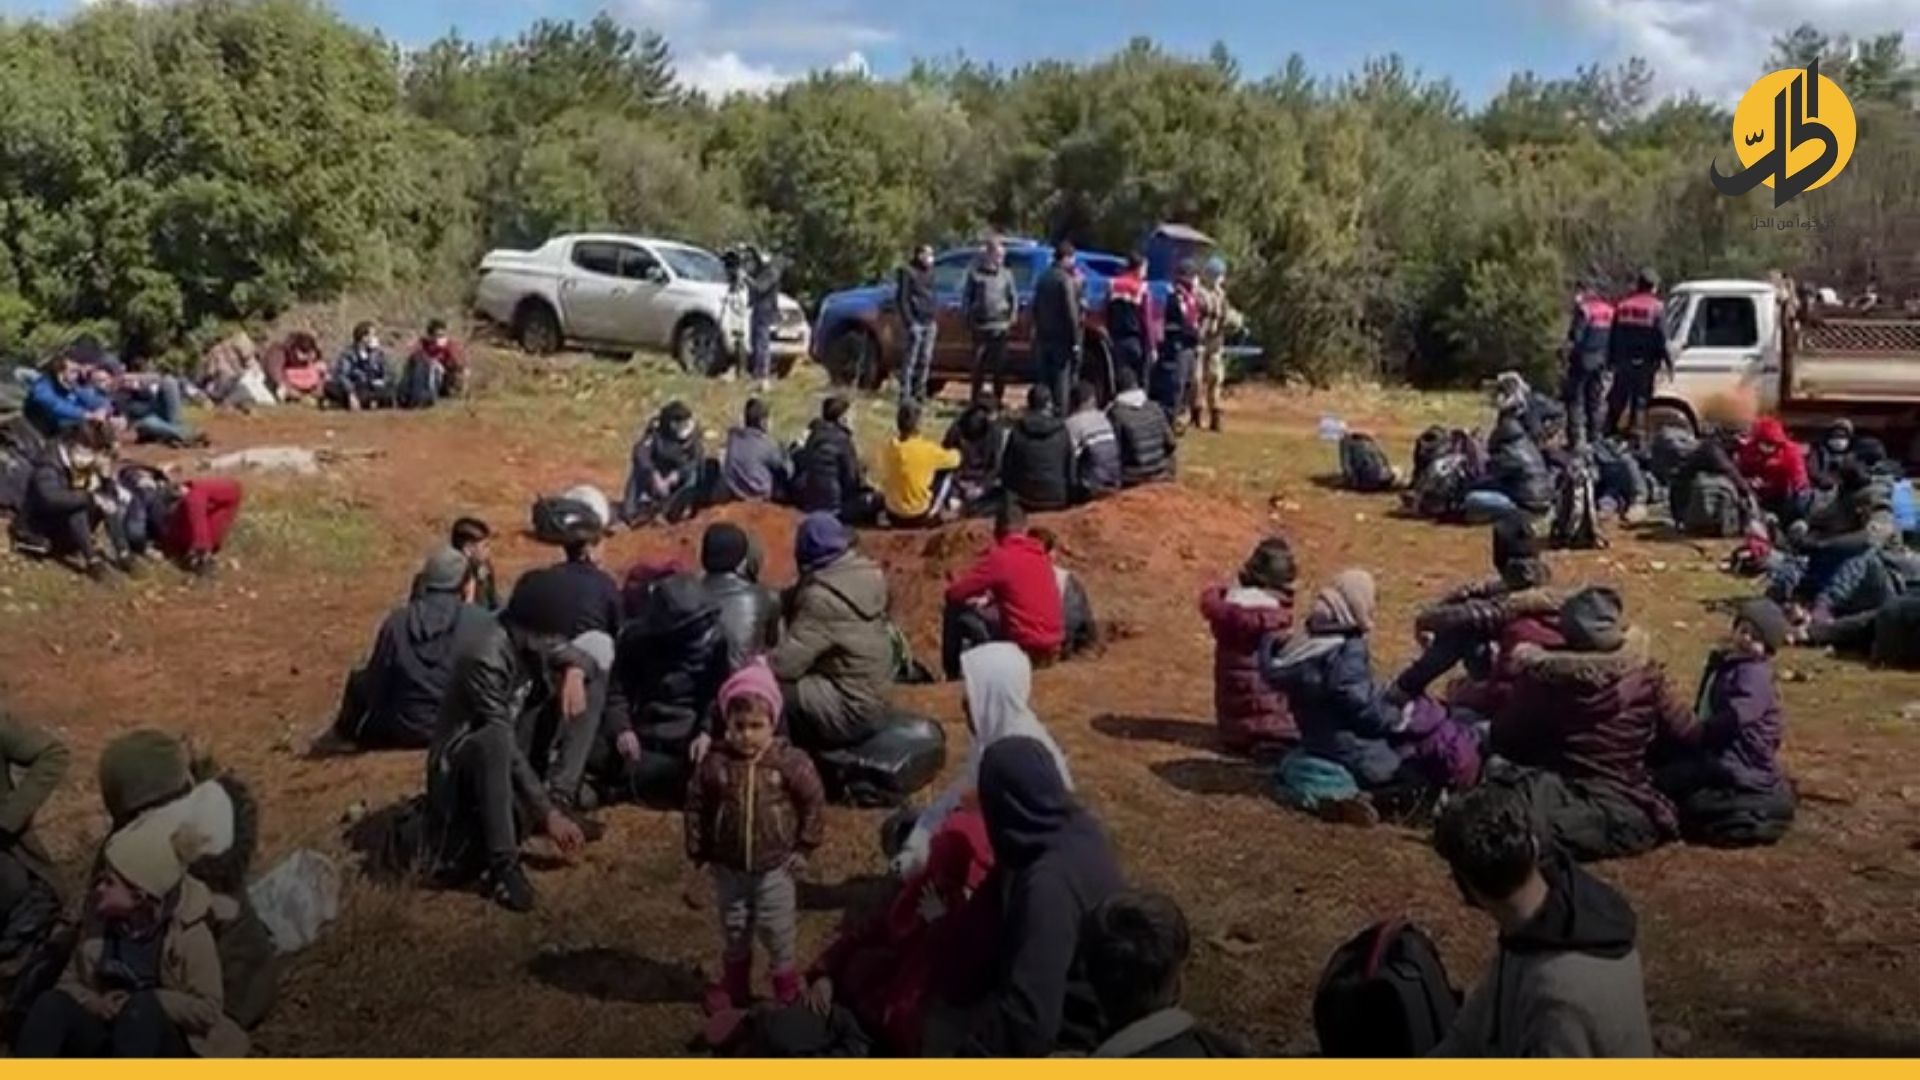 سوريون وعراقيون يتعرضون للضرب والسلب قرب الحدود التركية البلغارية